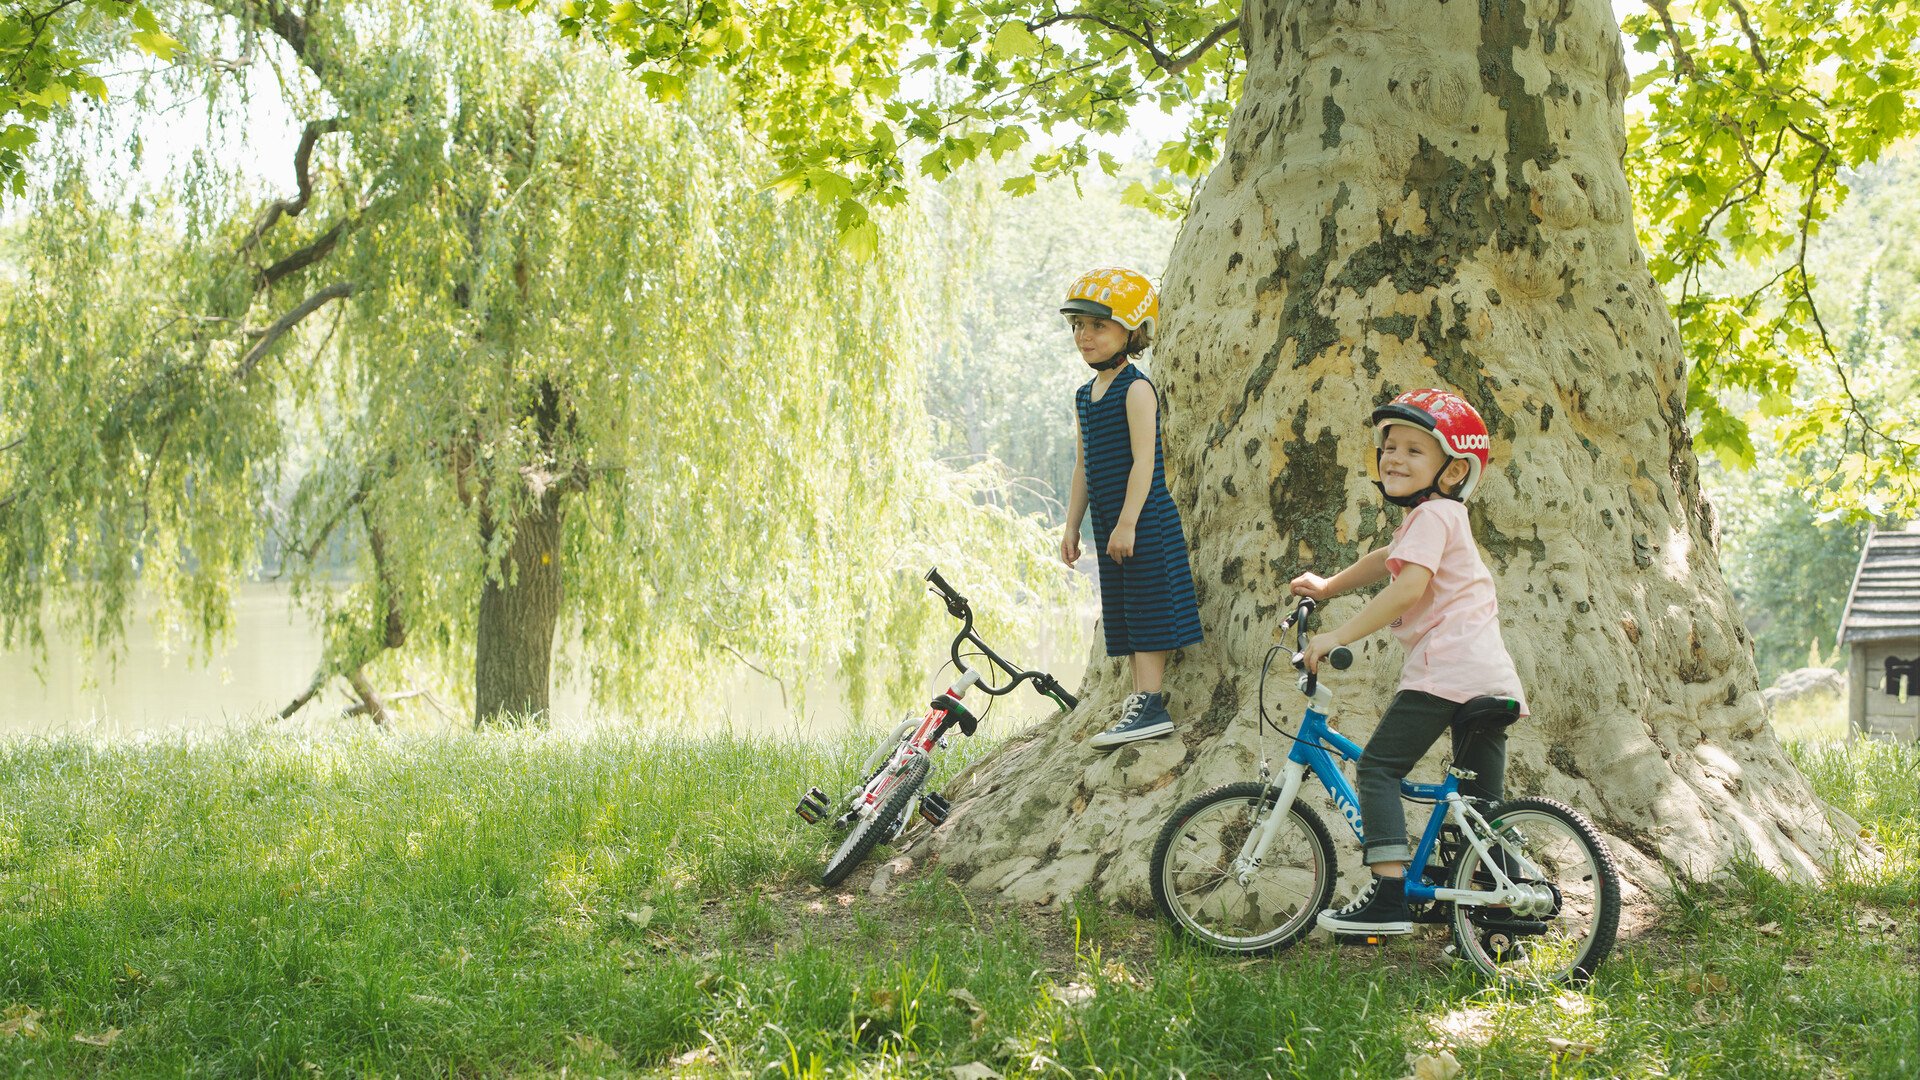 Vélo enfant : tous les critères pour bien choisir son deux-roues